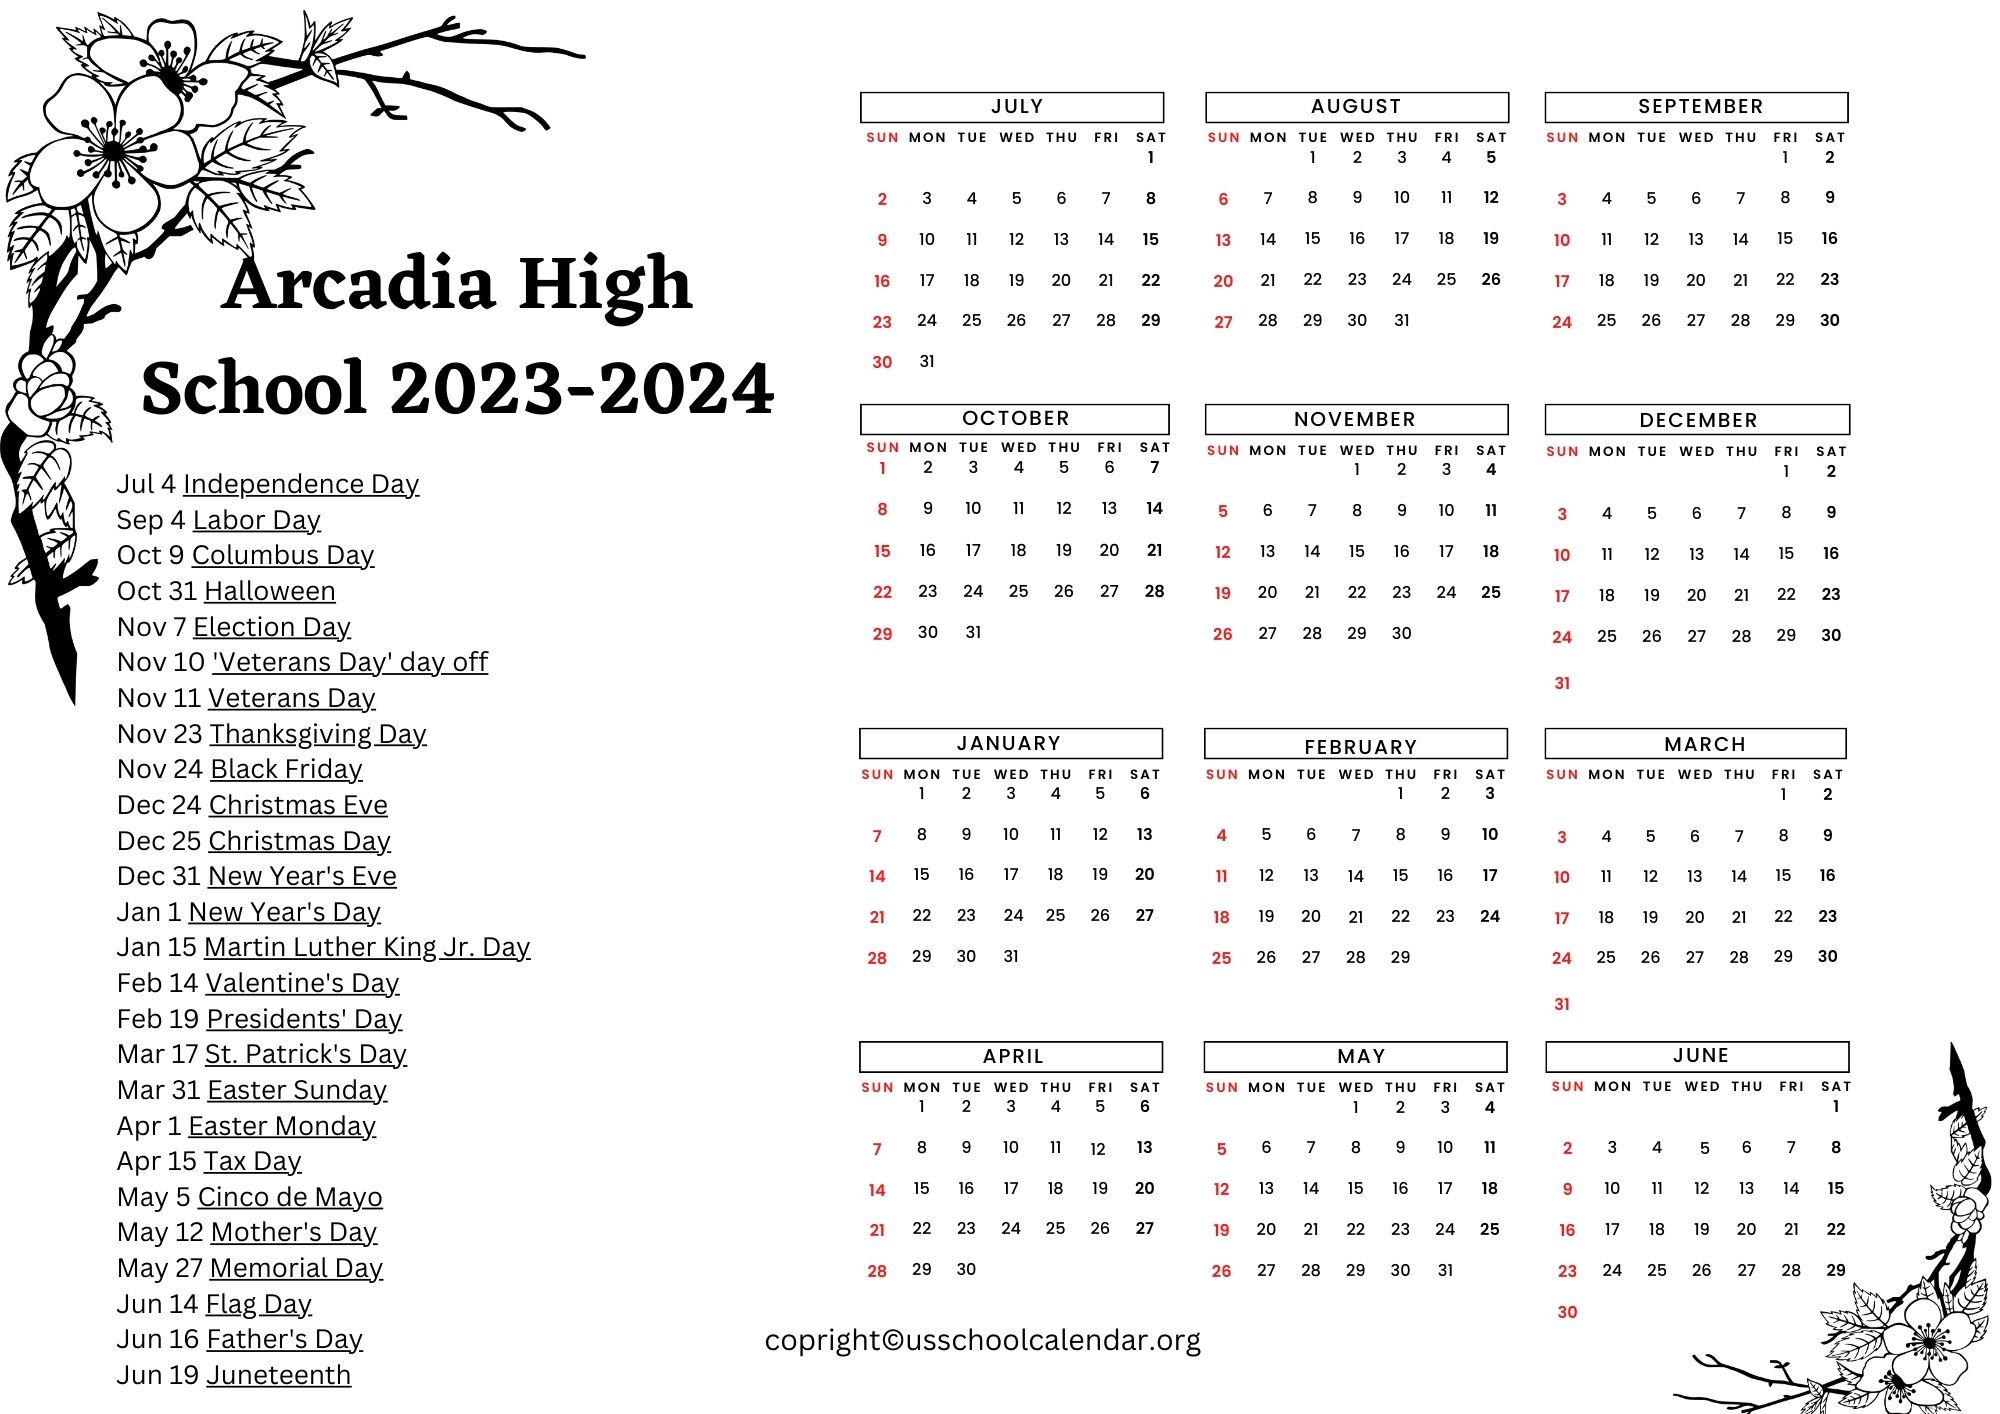 Arcadia High School Calendar with Holidays 20232024